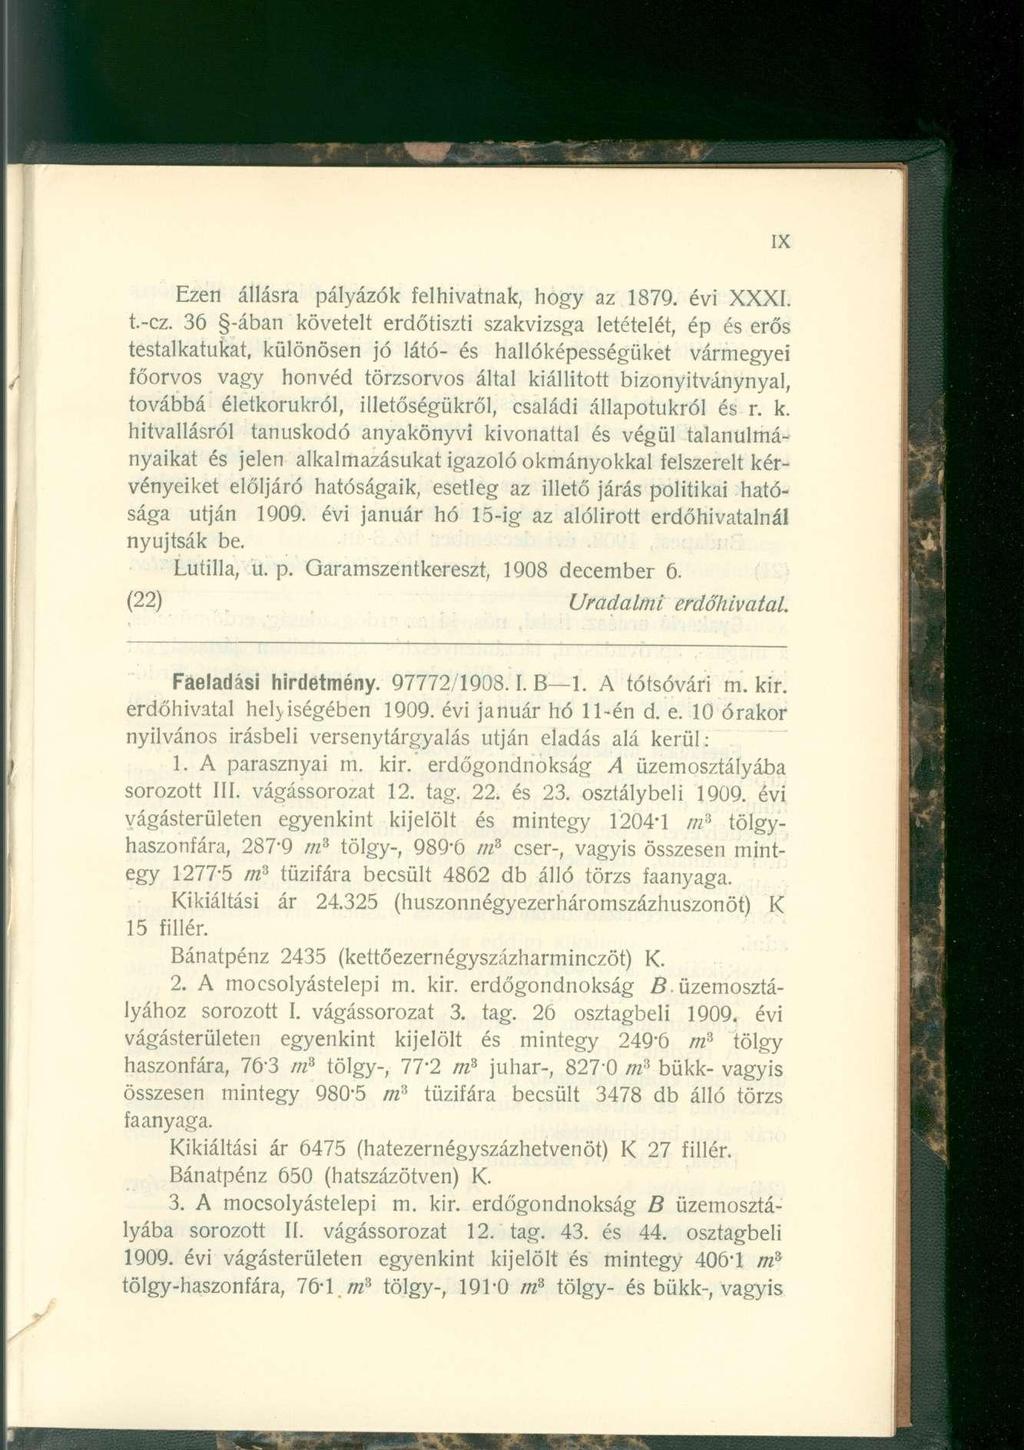 Ezen állásra pályázók felhivatnak, hogy az 1879. évi XXXI. t.-cz.